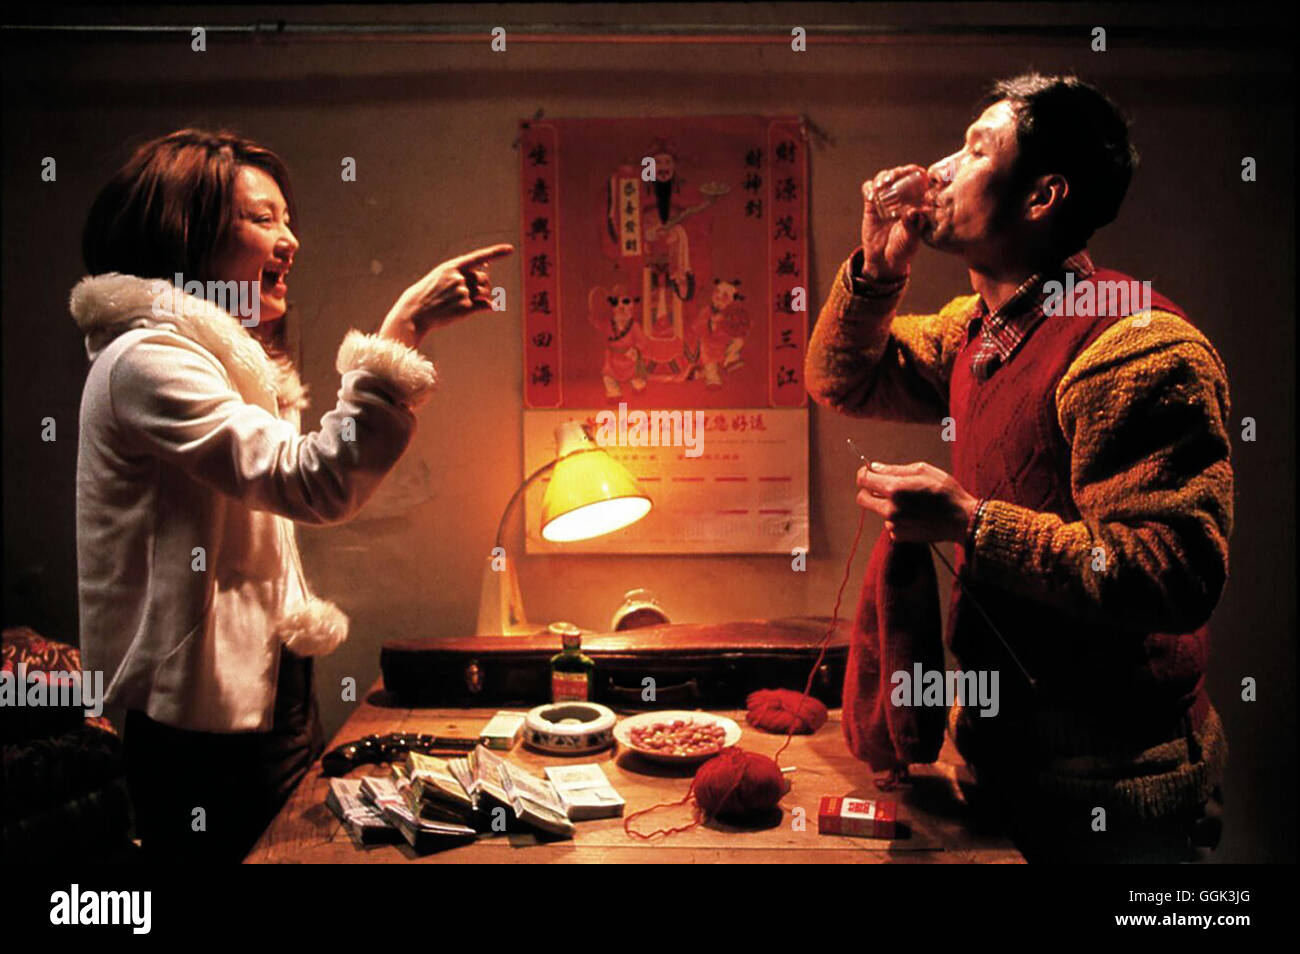 XIAOS WEG / Together / Han ni zai yiki CHN 2002 / Chen Kaige Szene mit Lili (CHEN HONG) und Liu Cheng (LIU PEIQI) Regie: Chen Kaige aka. Together / Han ni zai yiki Stock Photo